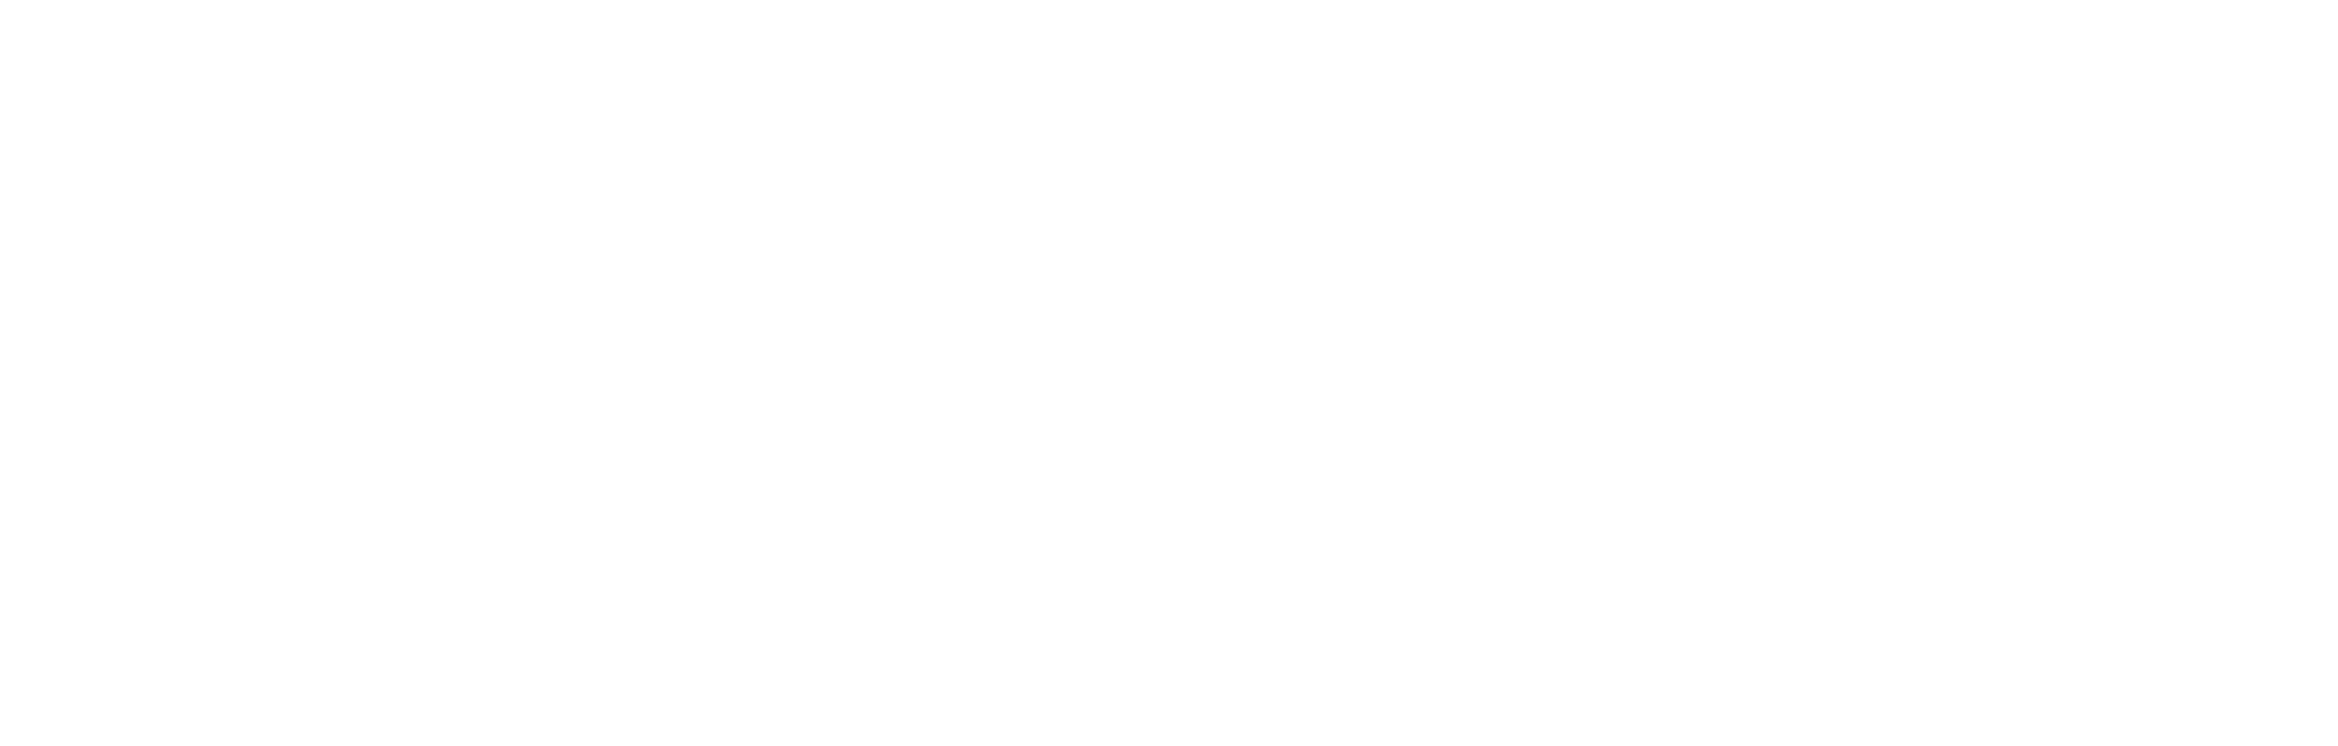 oc-organic-logo